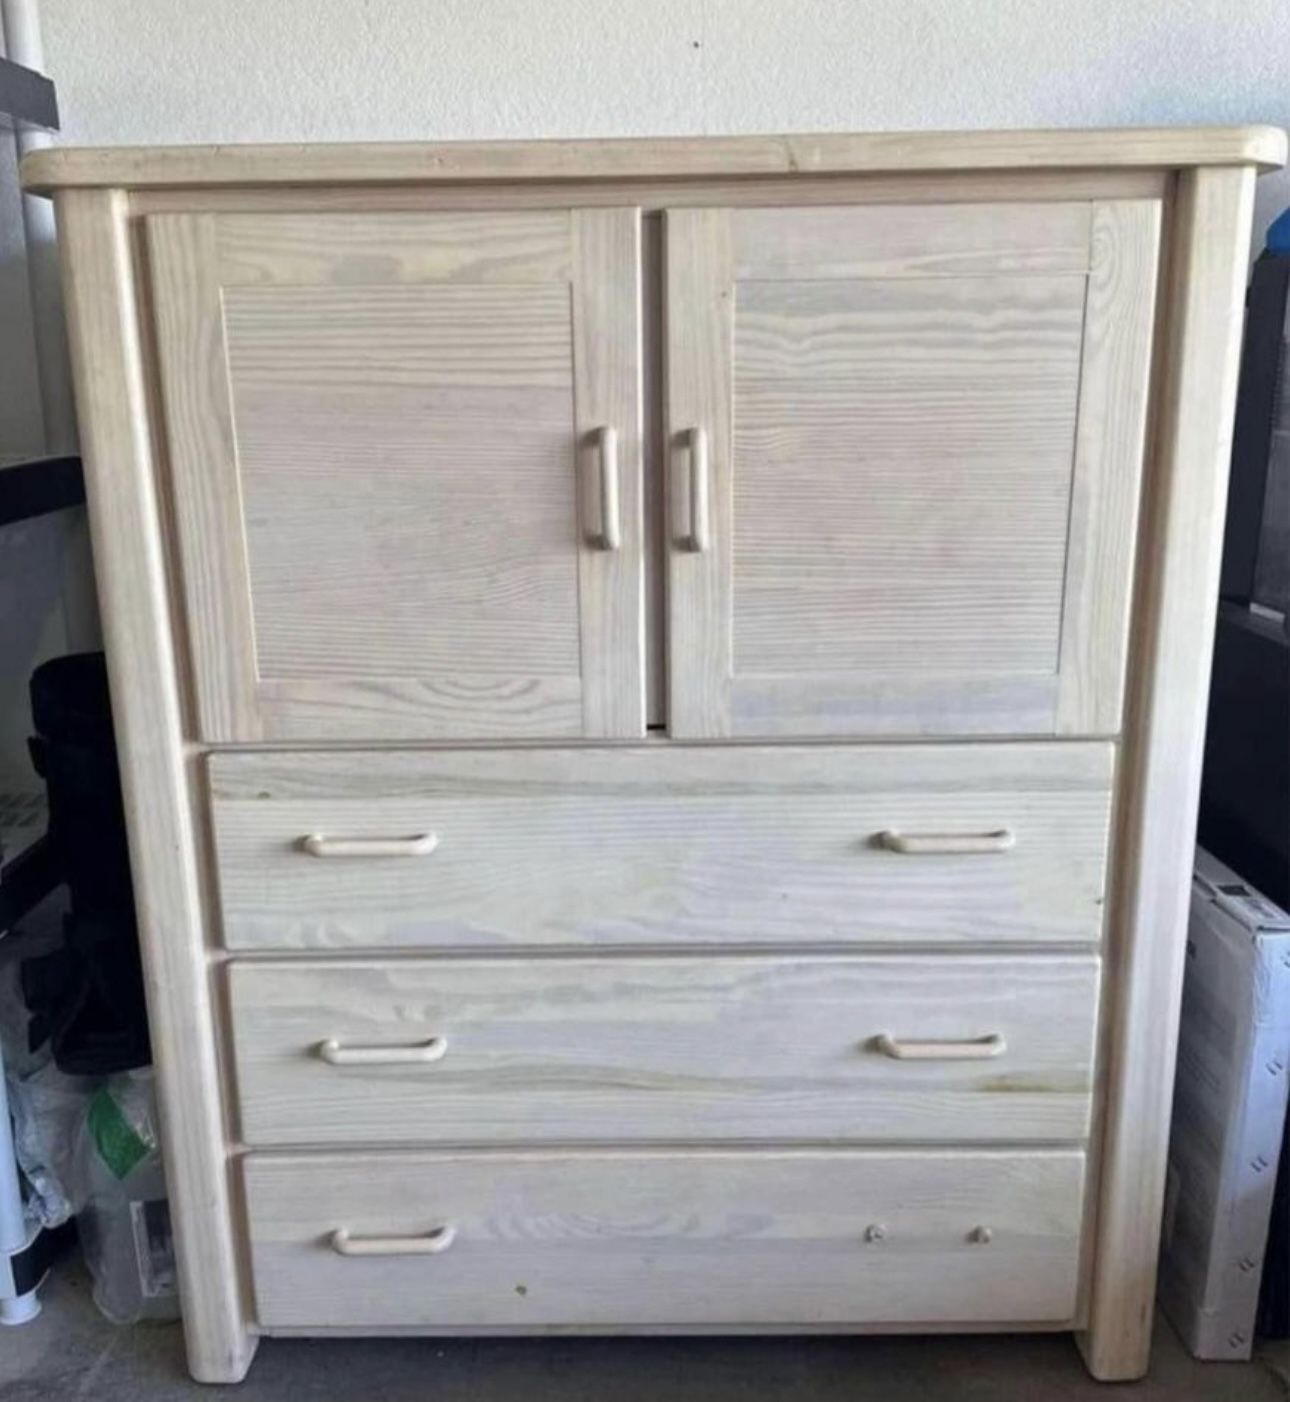 3 drawer dresser + storage cabinet